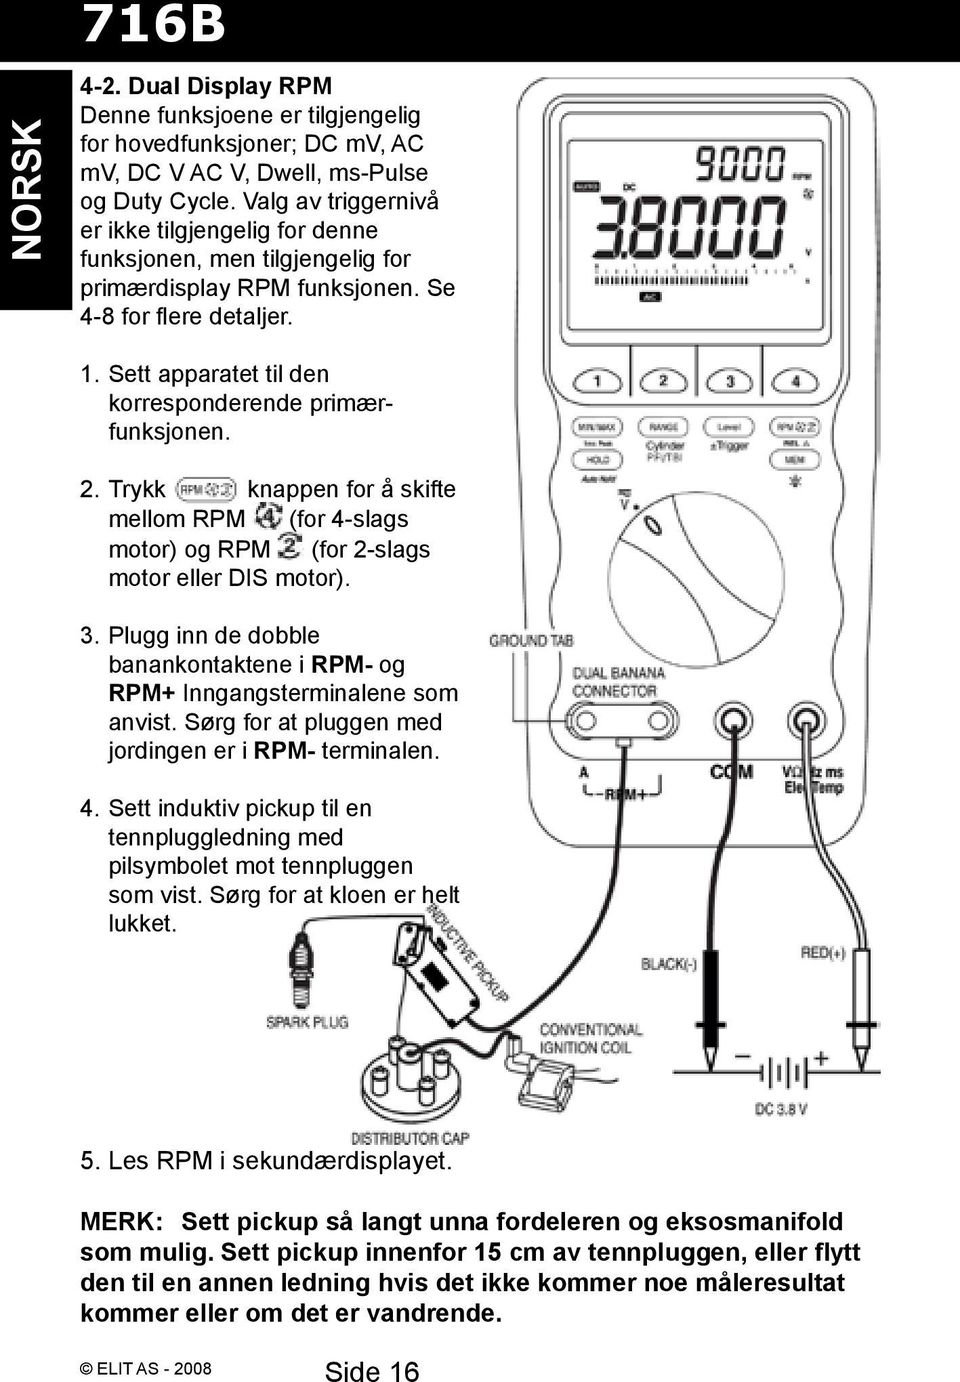 Sett apparatet til den korresponderende primærfunksjonen. 2. Trykk knappen for å skifte mellom RPM (for 4-slags motor) og RPM (for 2-slags motor eller DIS motor). 3.